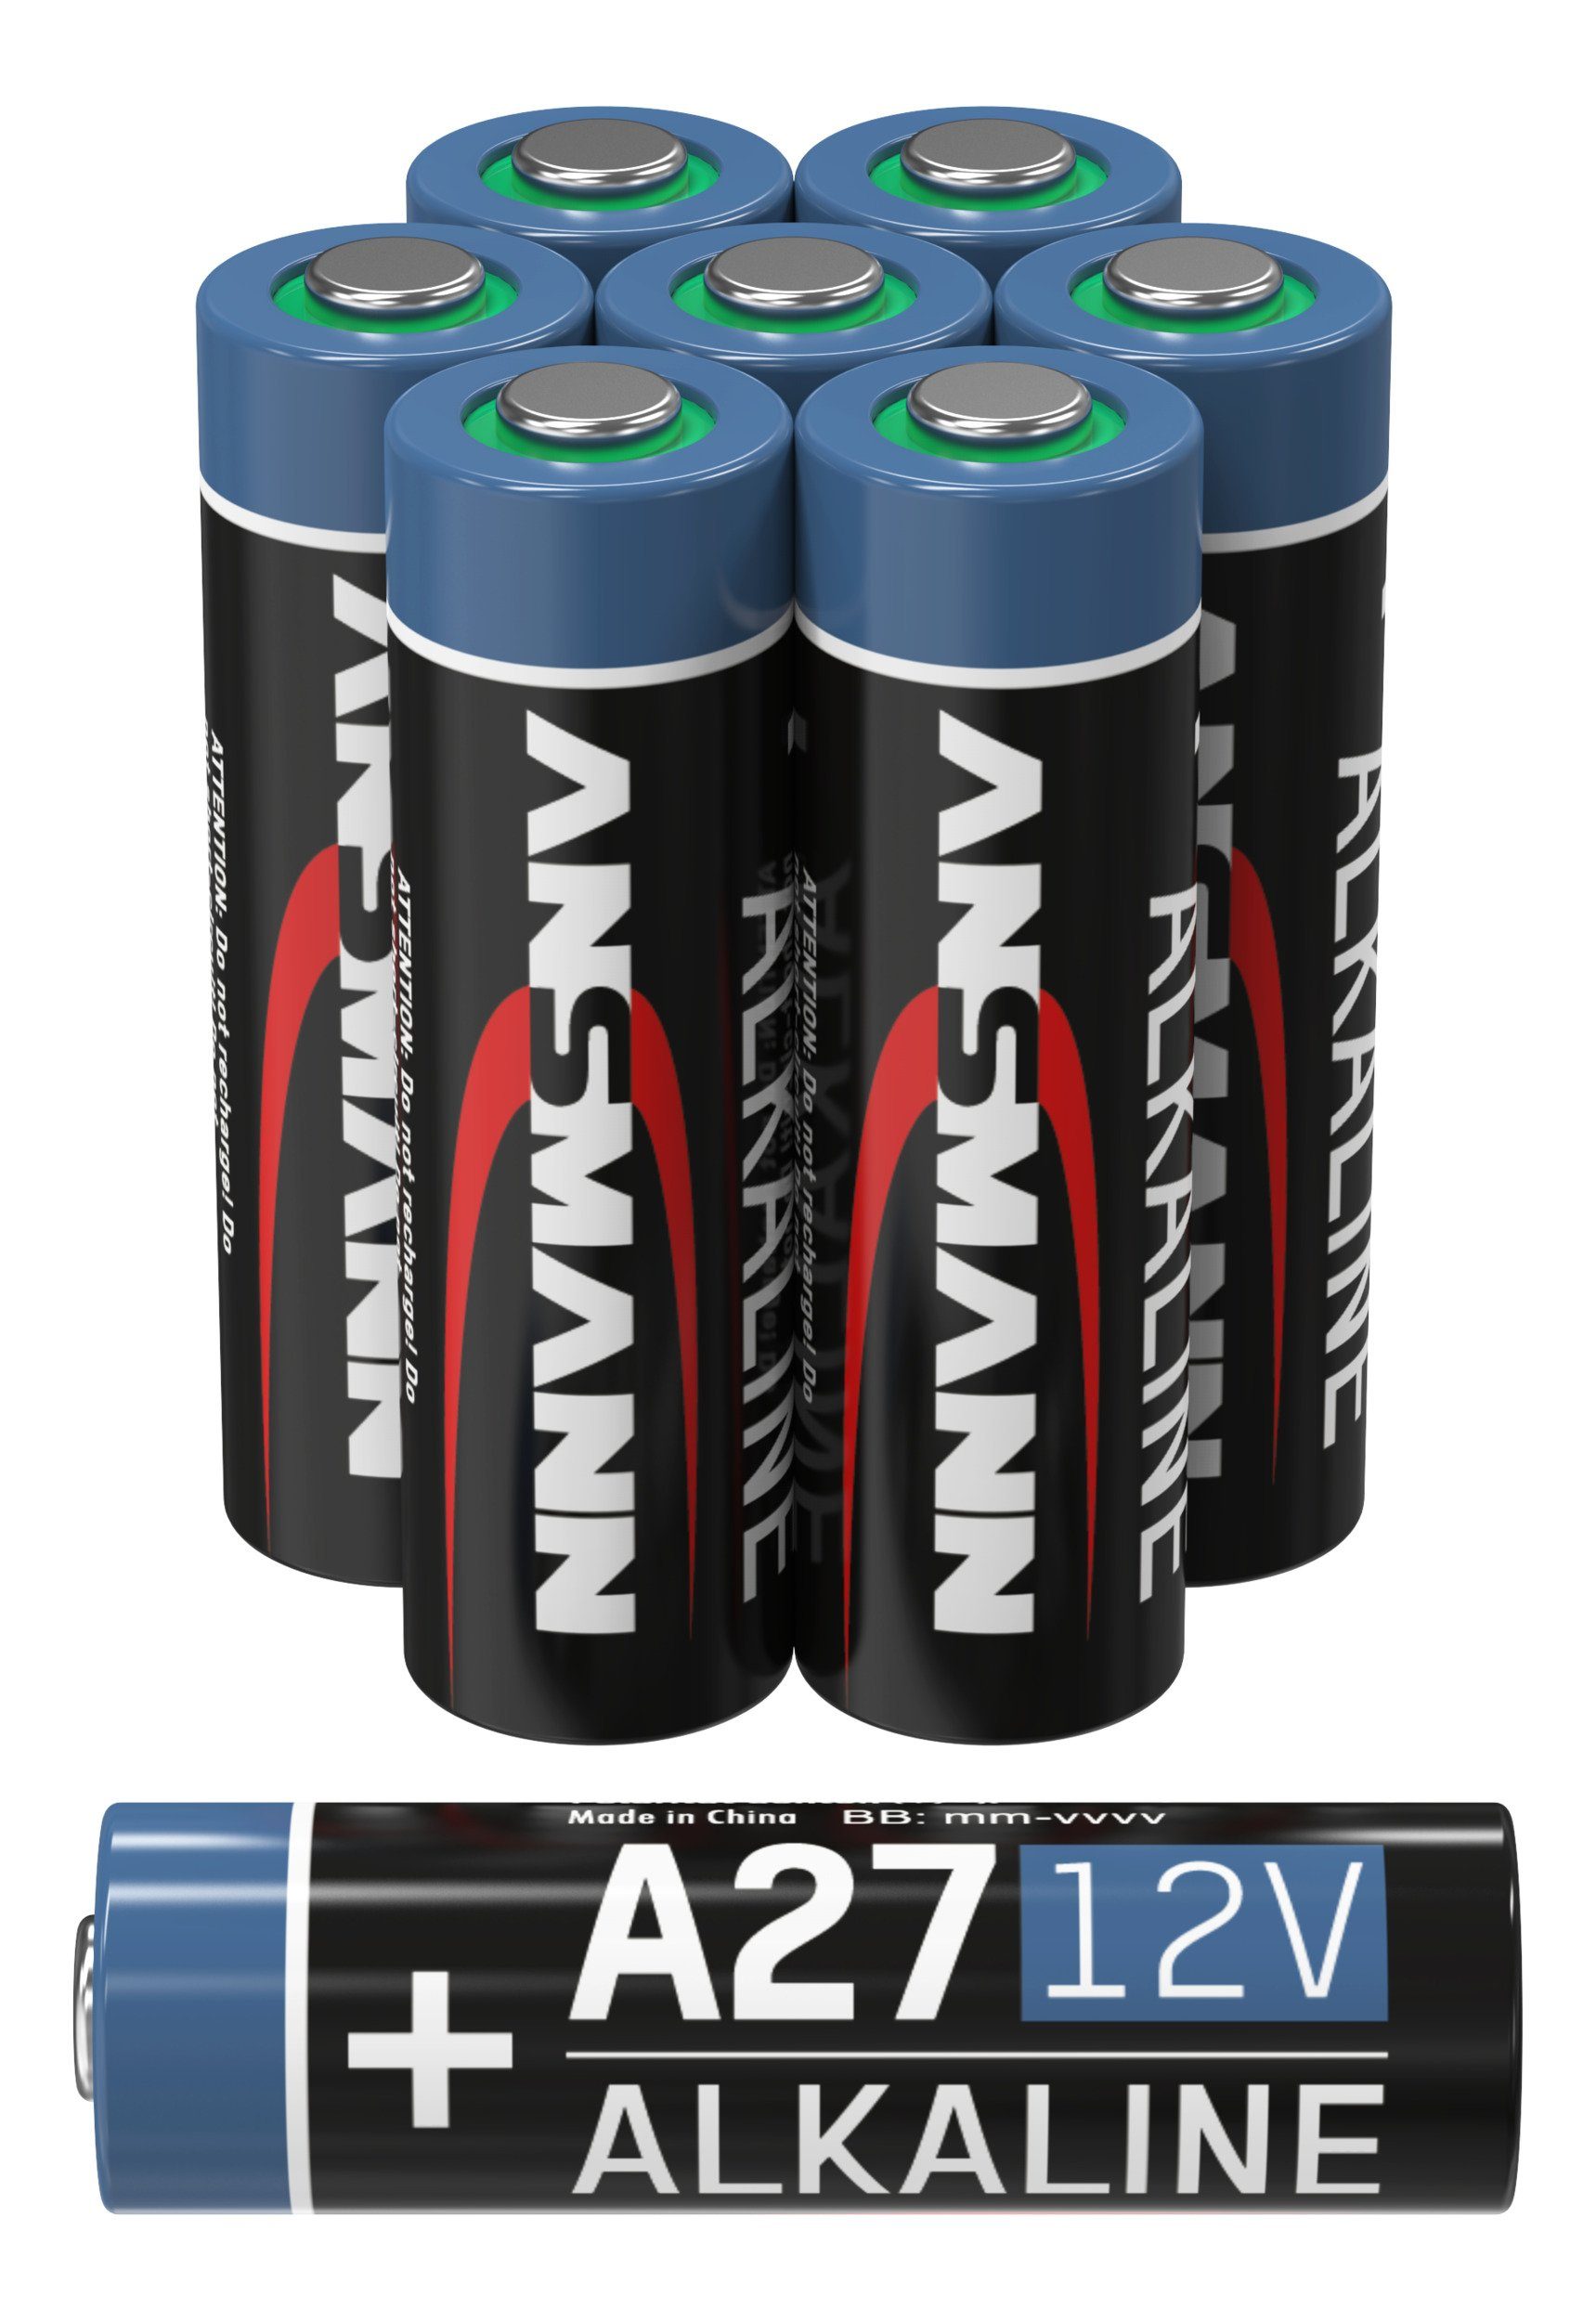 ANSMANN AG ANSMANN A27 12V Alkaline Batterie Spezialbatterie - 8er Pack Batterie